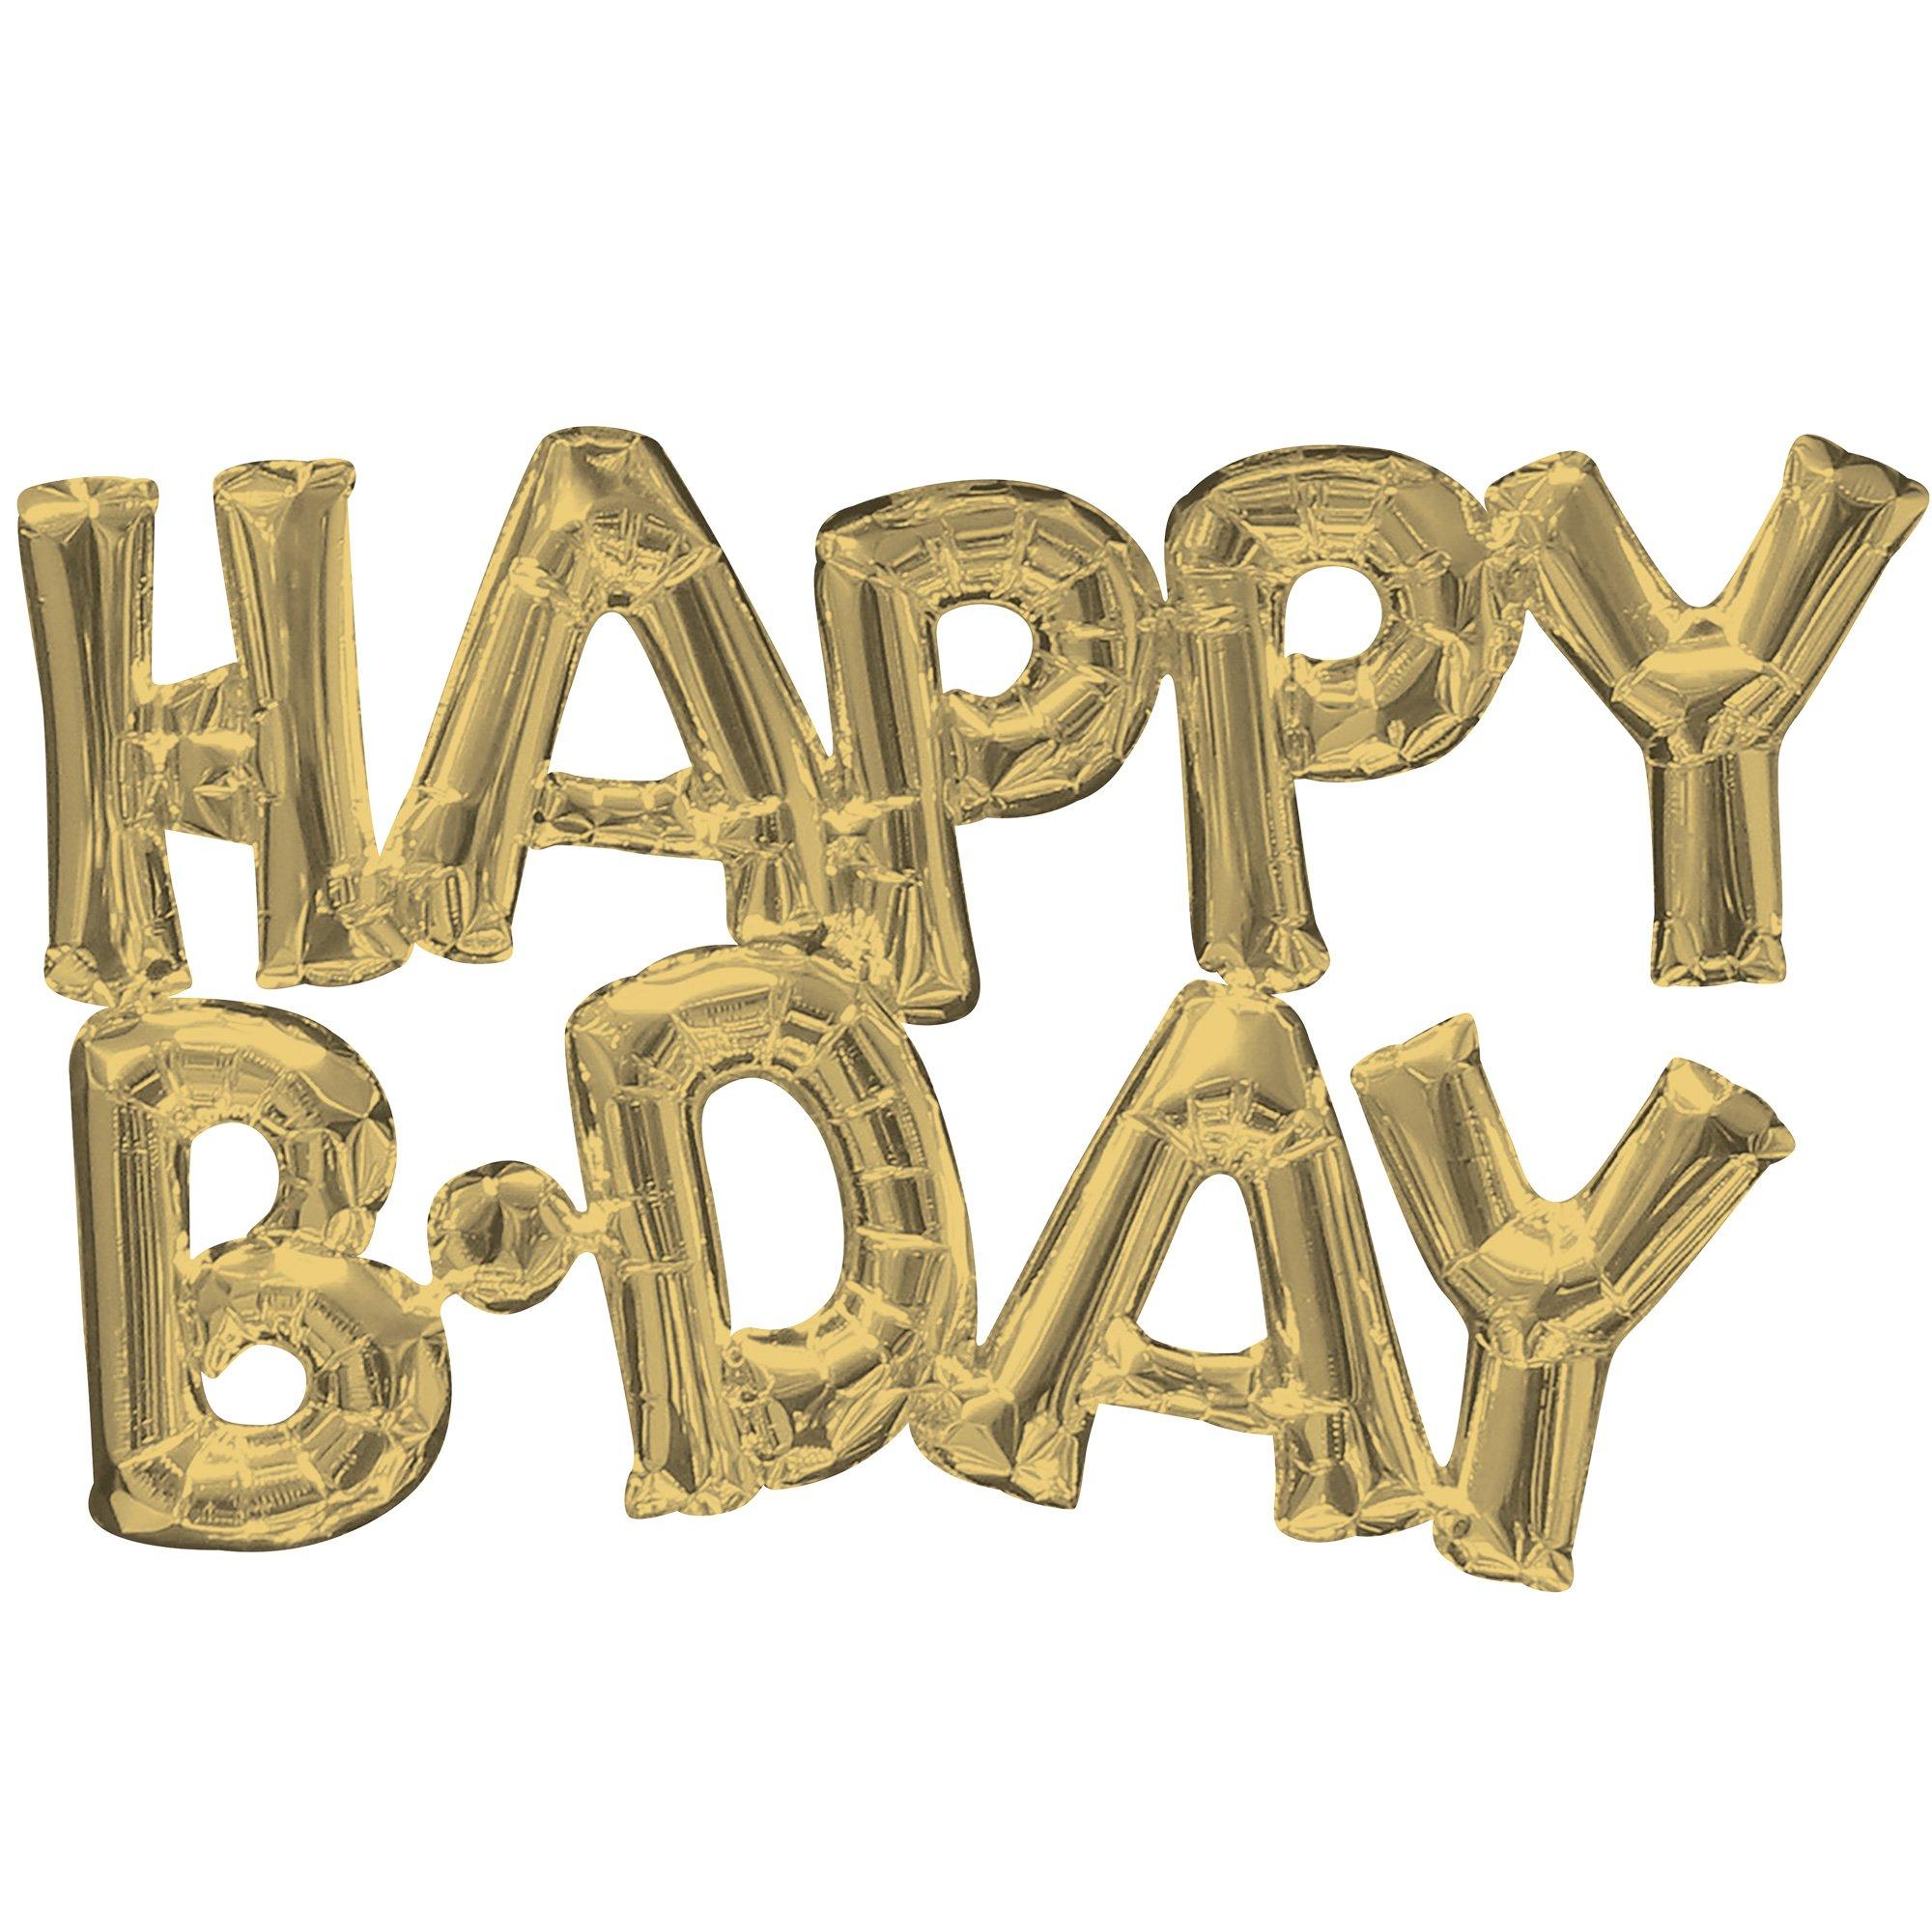 30 Block Phrase Happy Birthday White Gold Foil Balloon